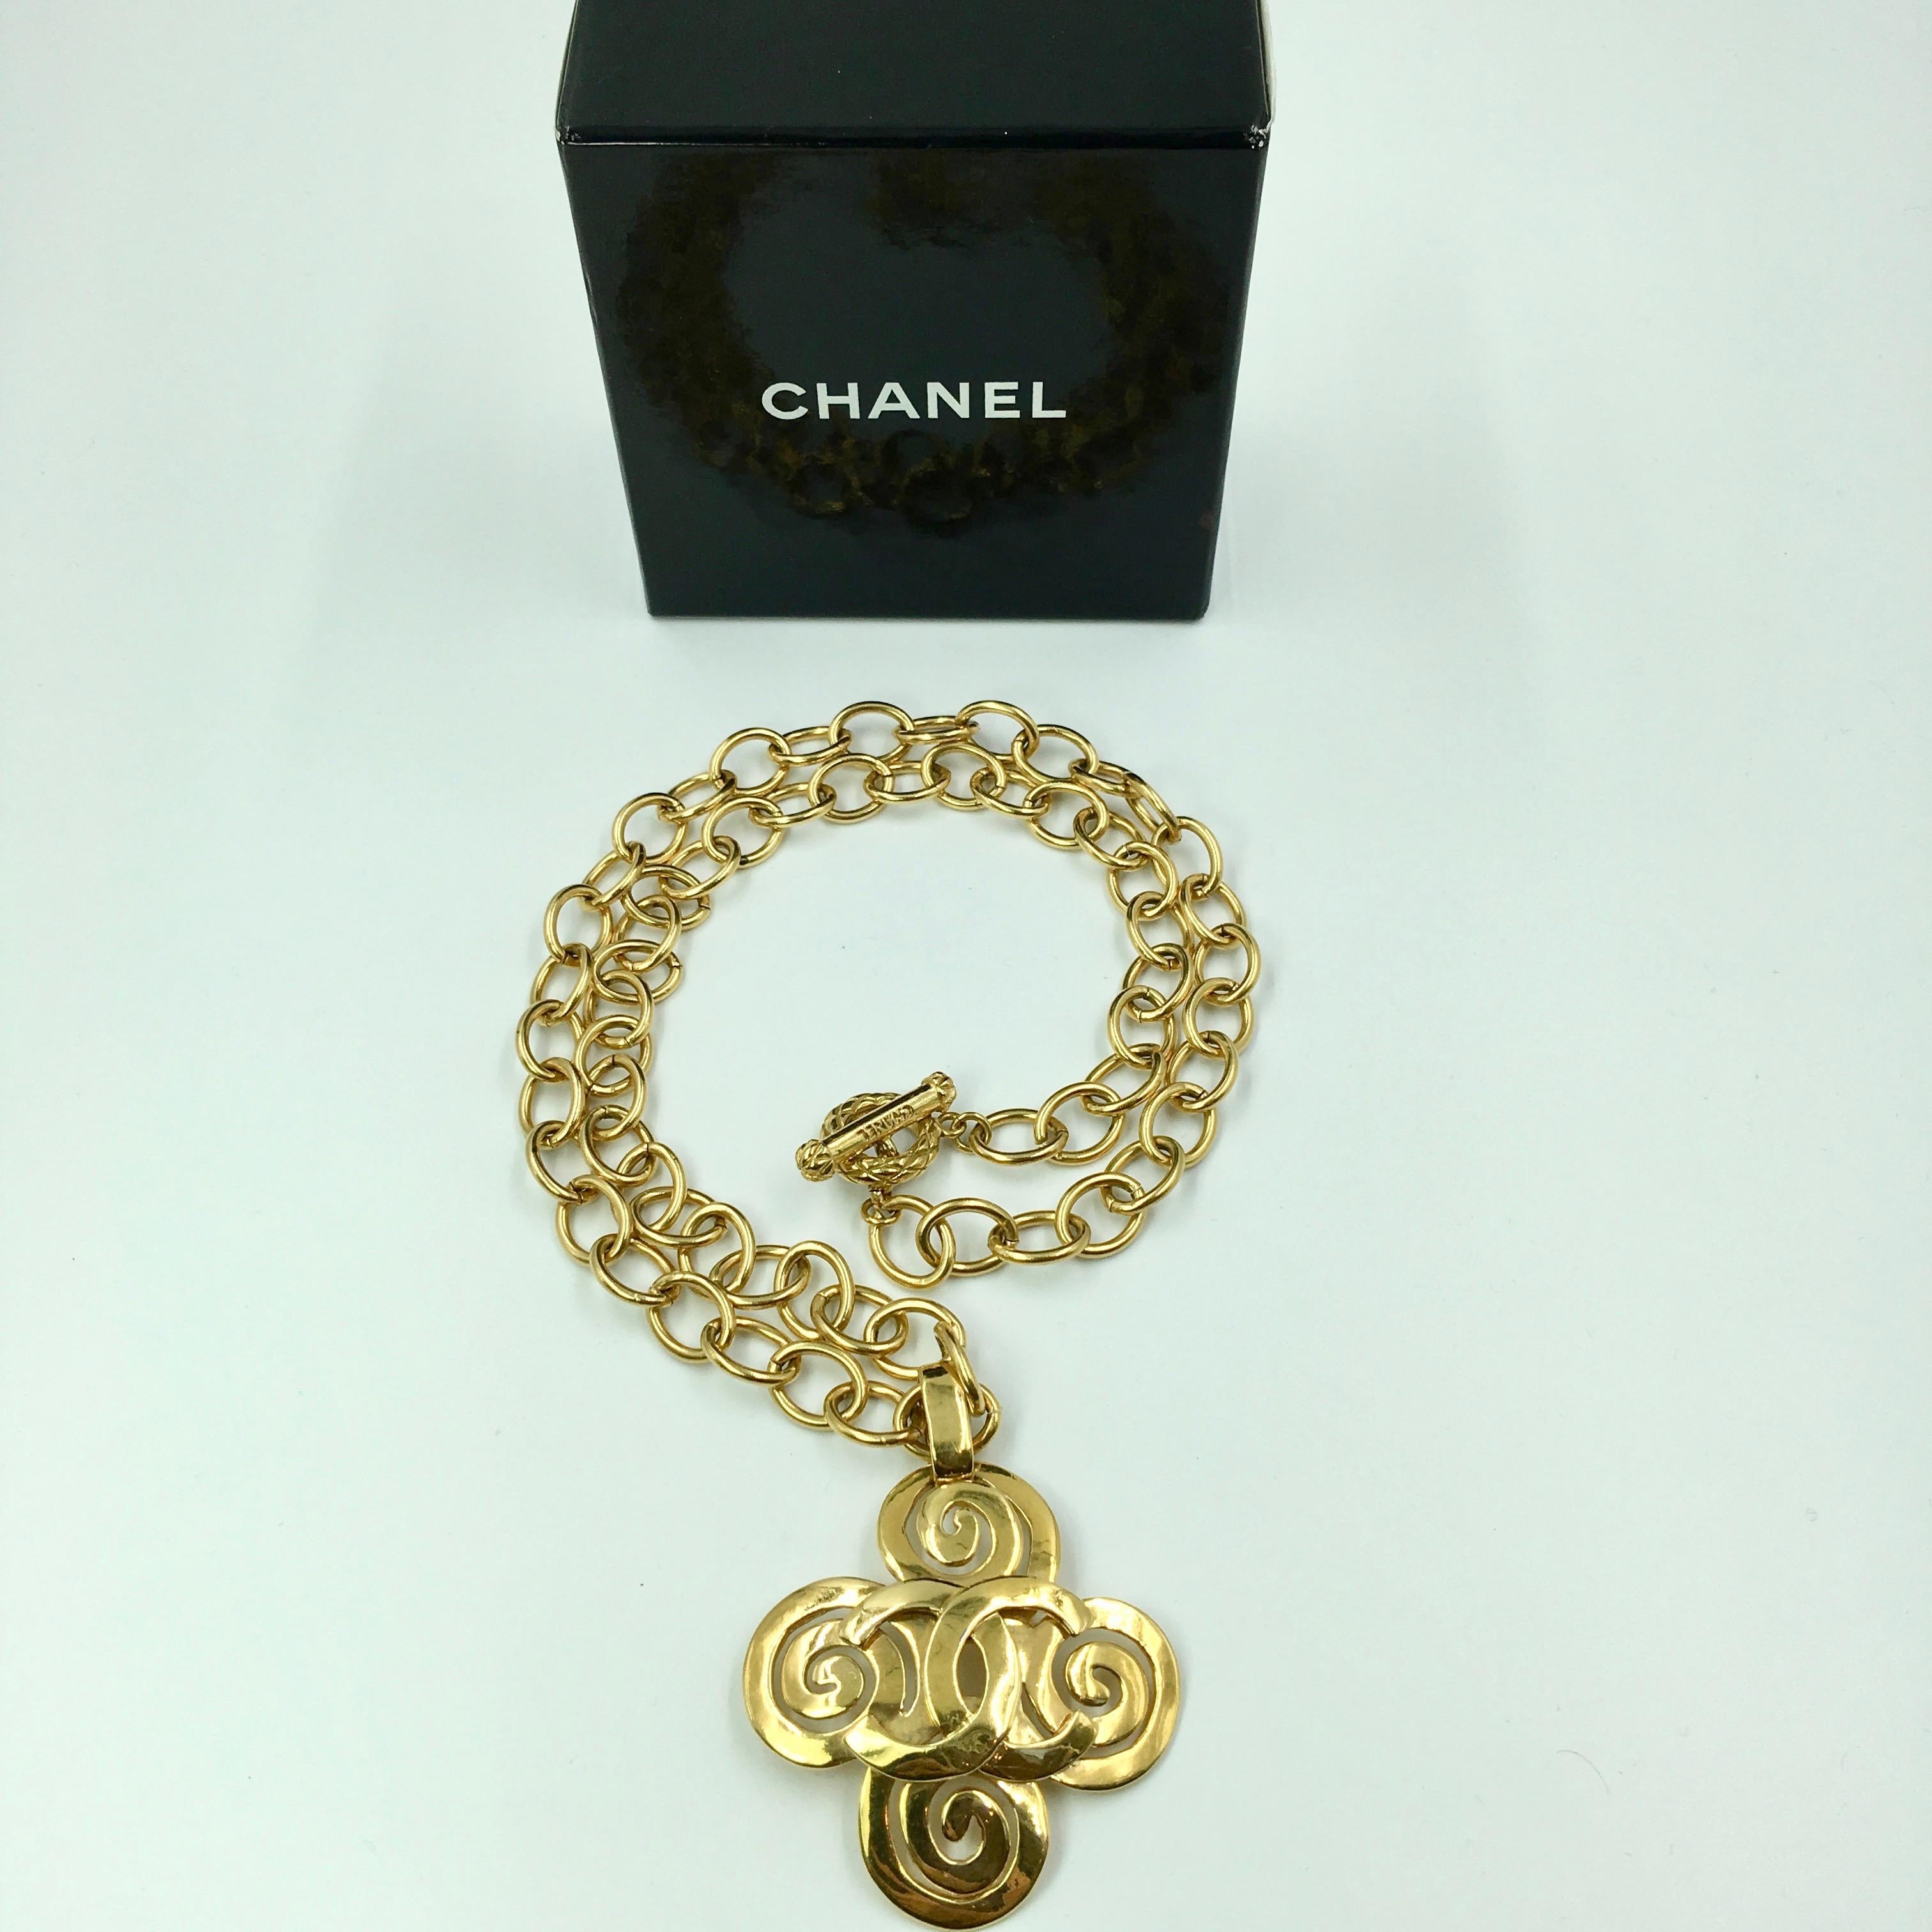 Chanel collier en métal doré avec croix en forme de tourbillon et logo CC. Estampillé Chanel et Made In France. 
Bon état vintage. Un maillon de chaîne présente une légère décoloration. Il n'est pas perceptible lorsqu'il est porté. Veuillez voir la